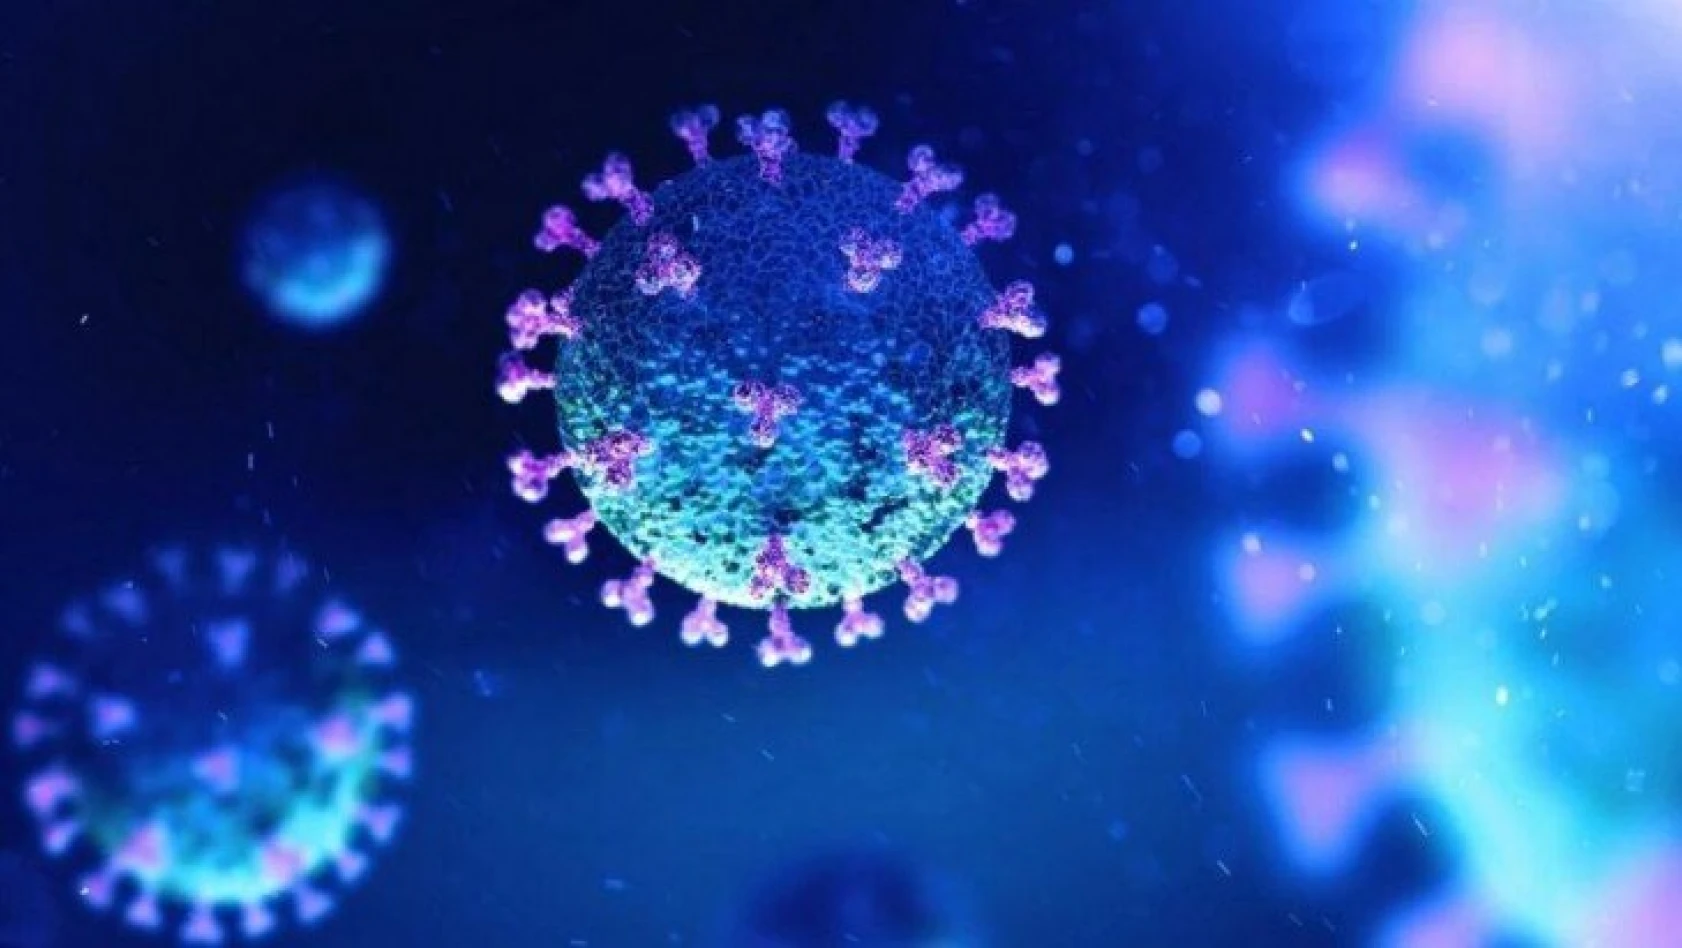 Çin, herkesi kandırmış! 'Koronavirüs hayvan pazarından çıktı' iddiası meğer yalanmış!